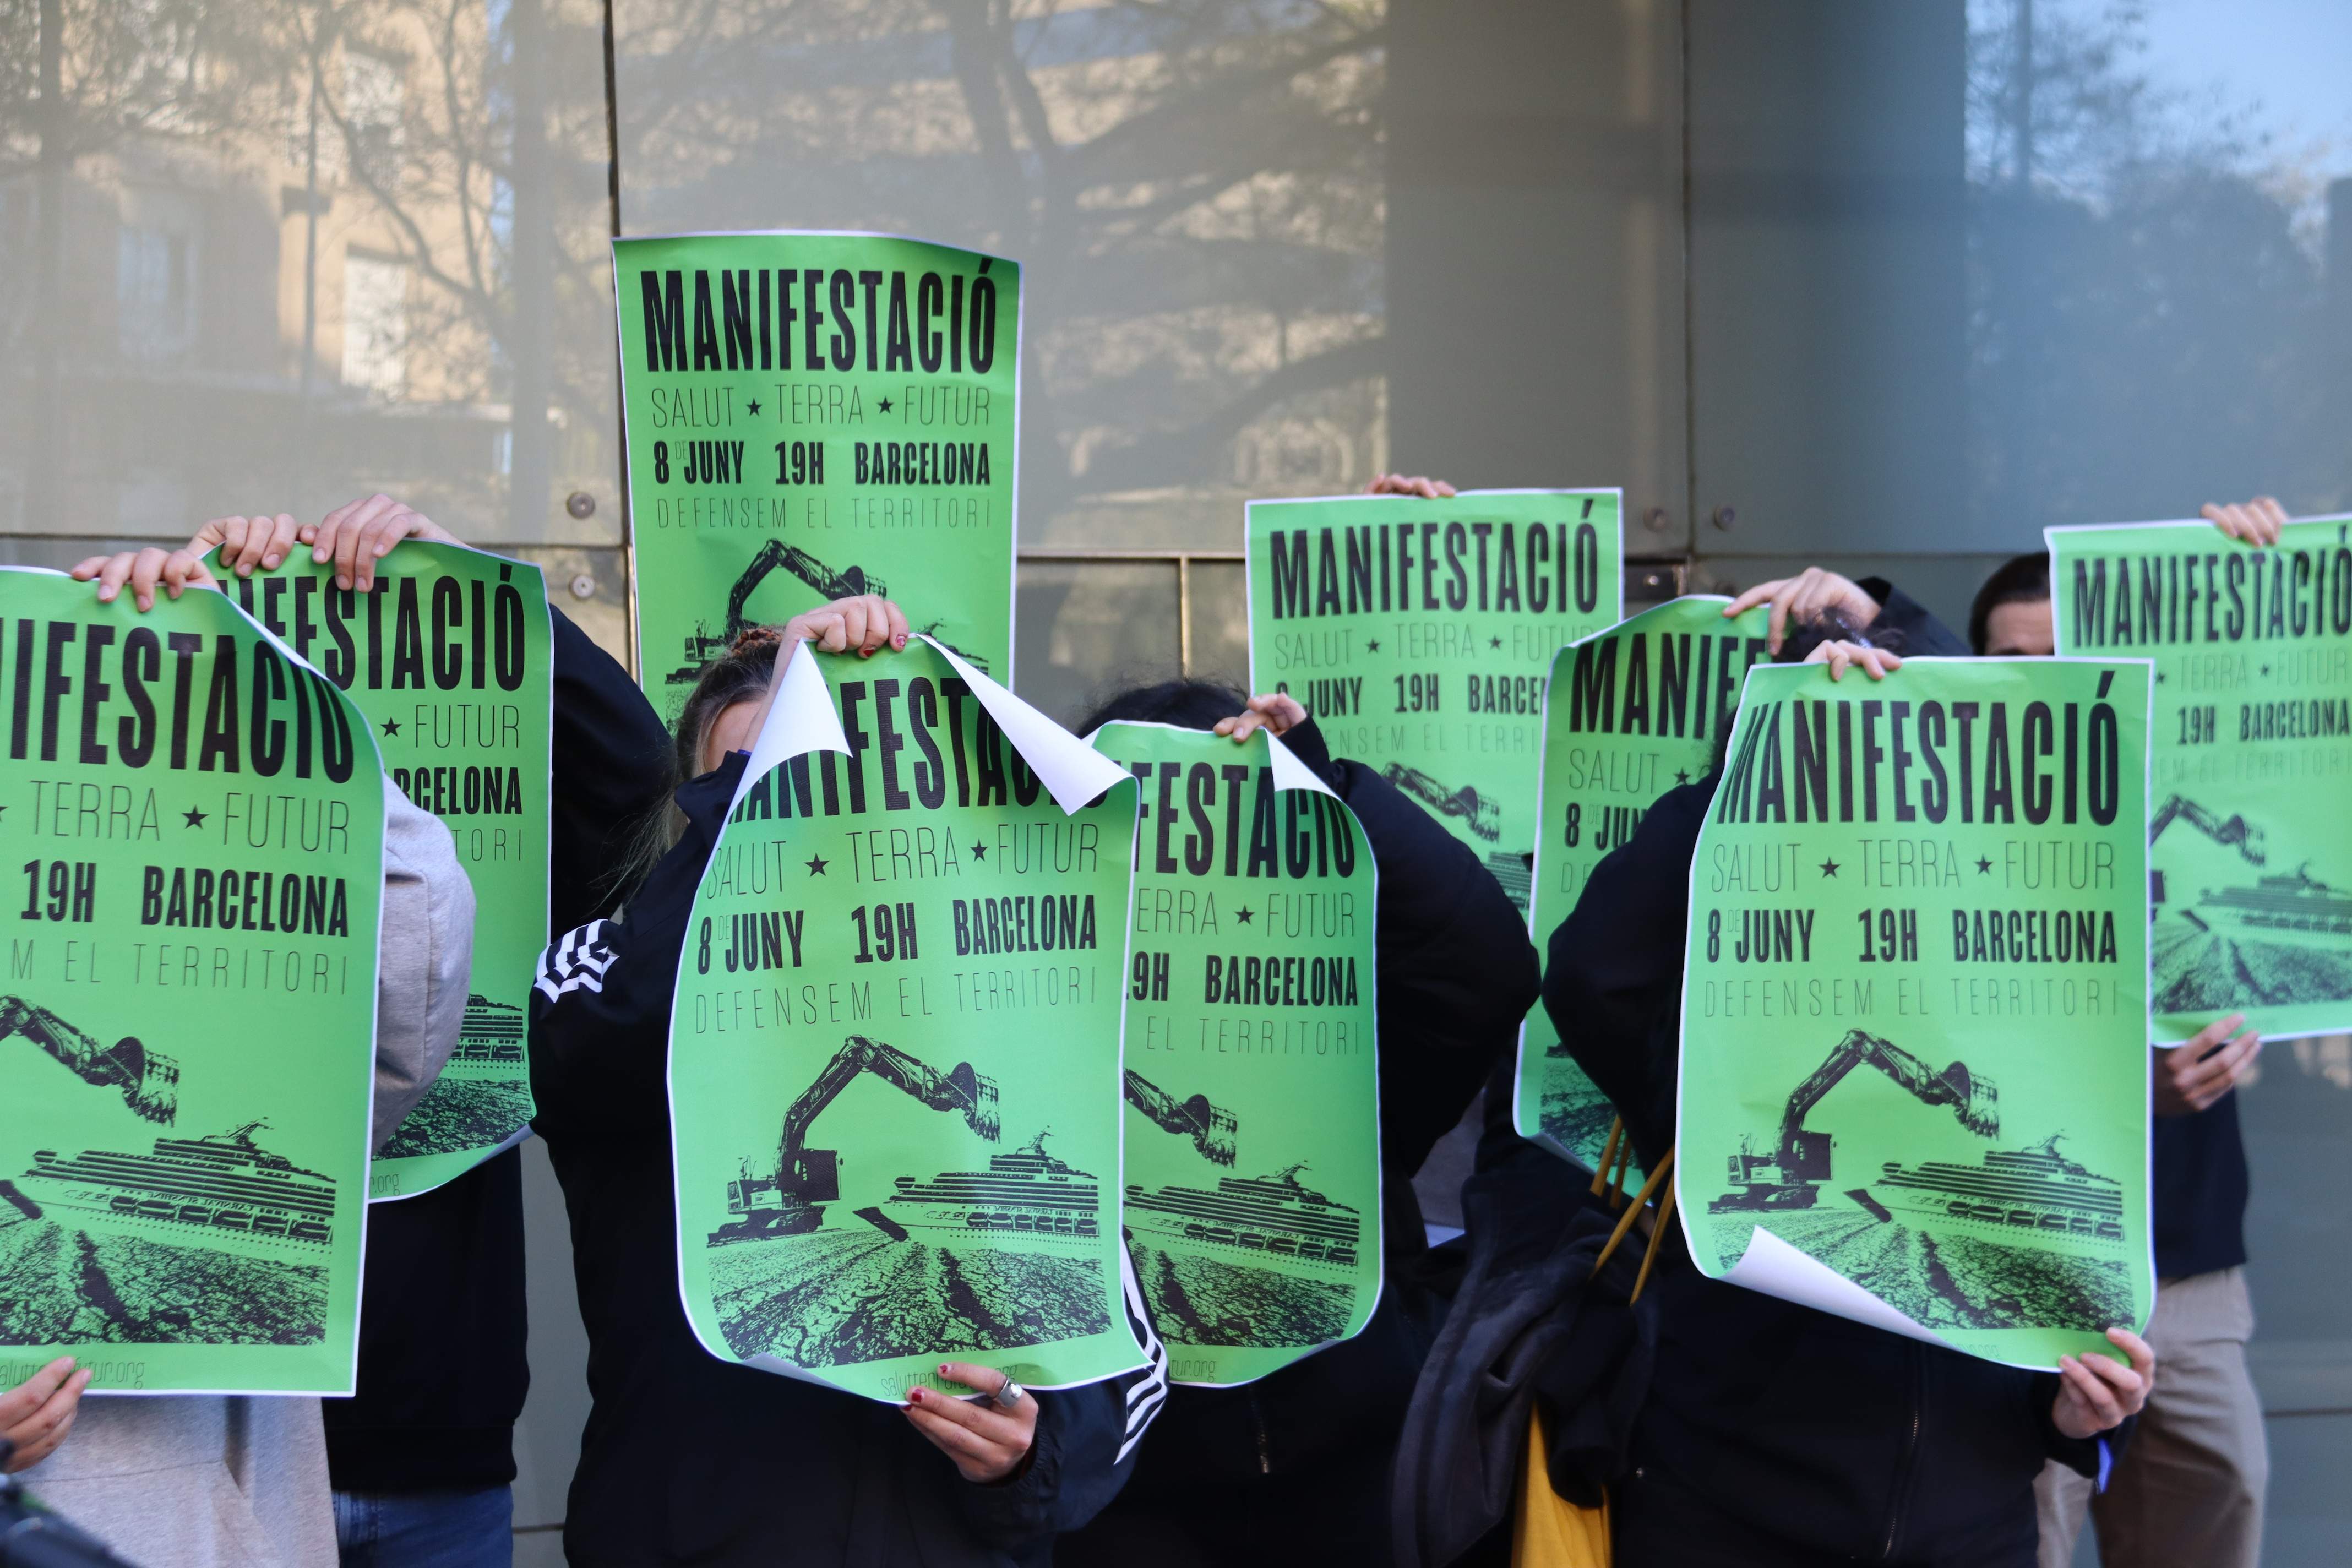 Manifestación ecologista el 8 de junio en Barcelona contra el turismo y los macroproyectos